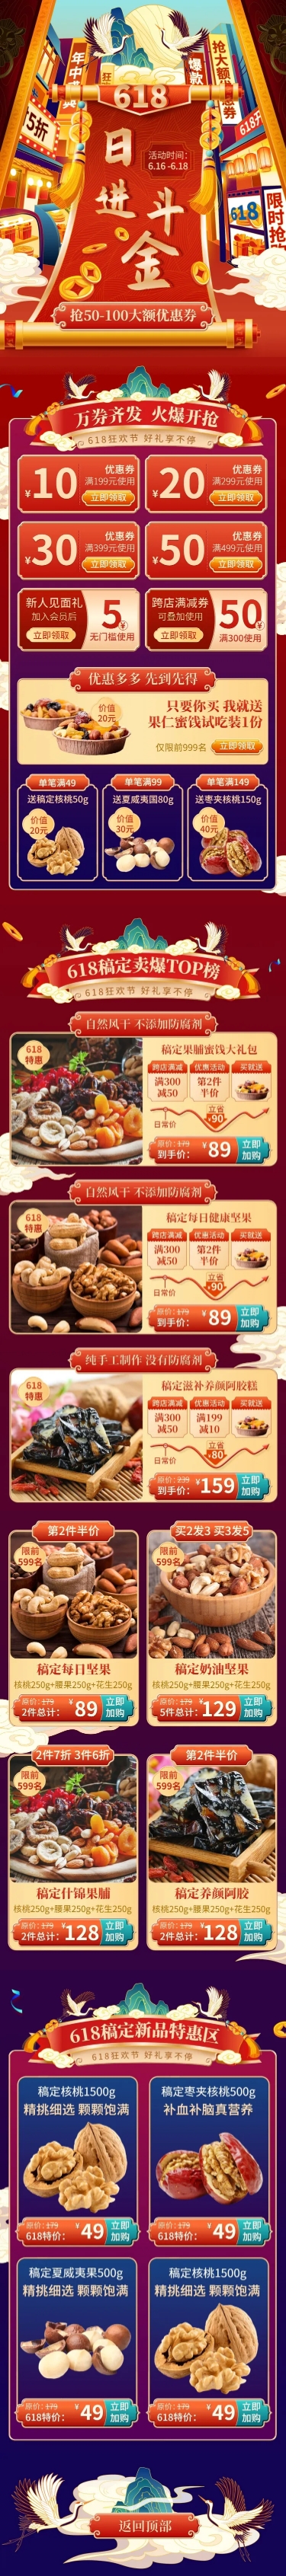 中国风618大促食品店铺首页